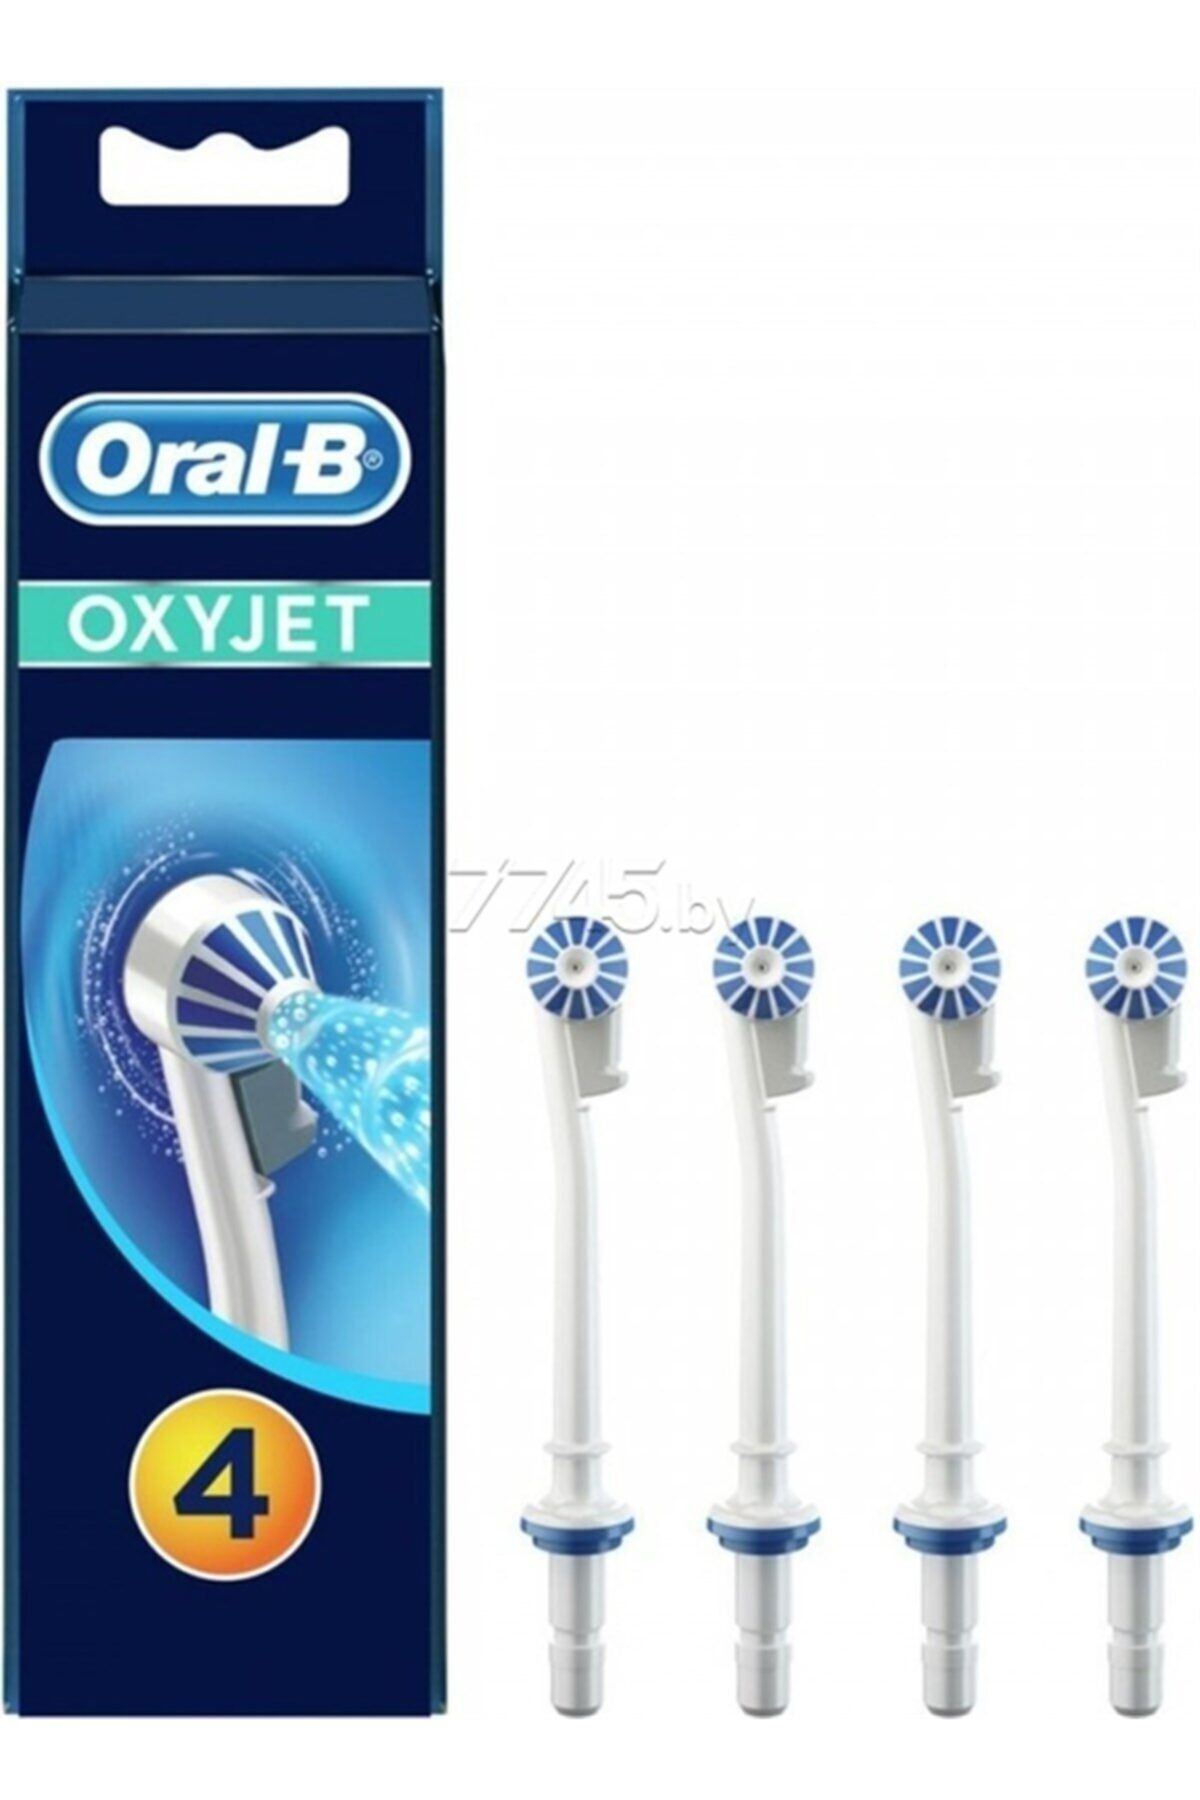 Oral-B Oral B Şarjlı Diş Fırçası Ağız Duşu Yedek Başlığı Oxyjet 4lü